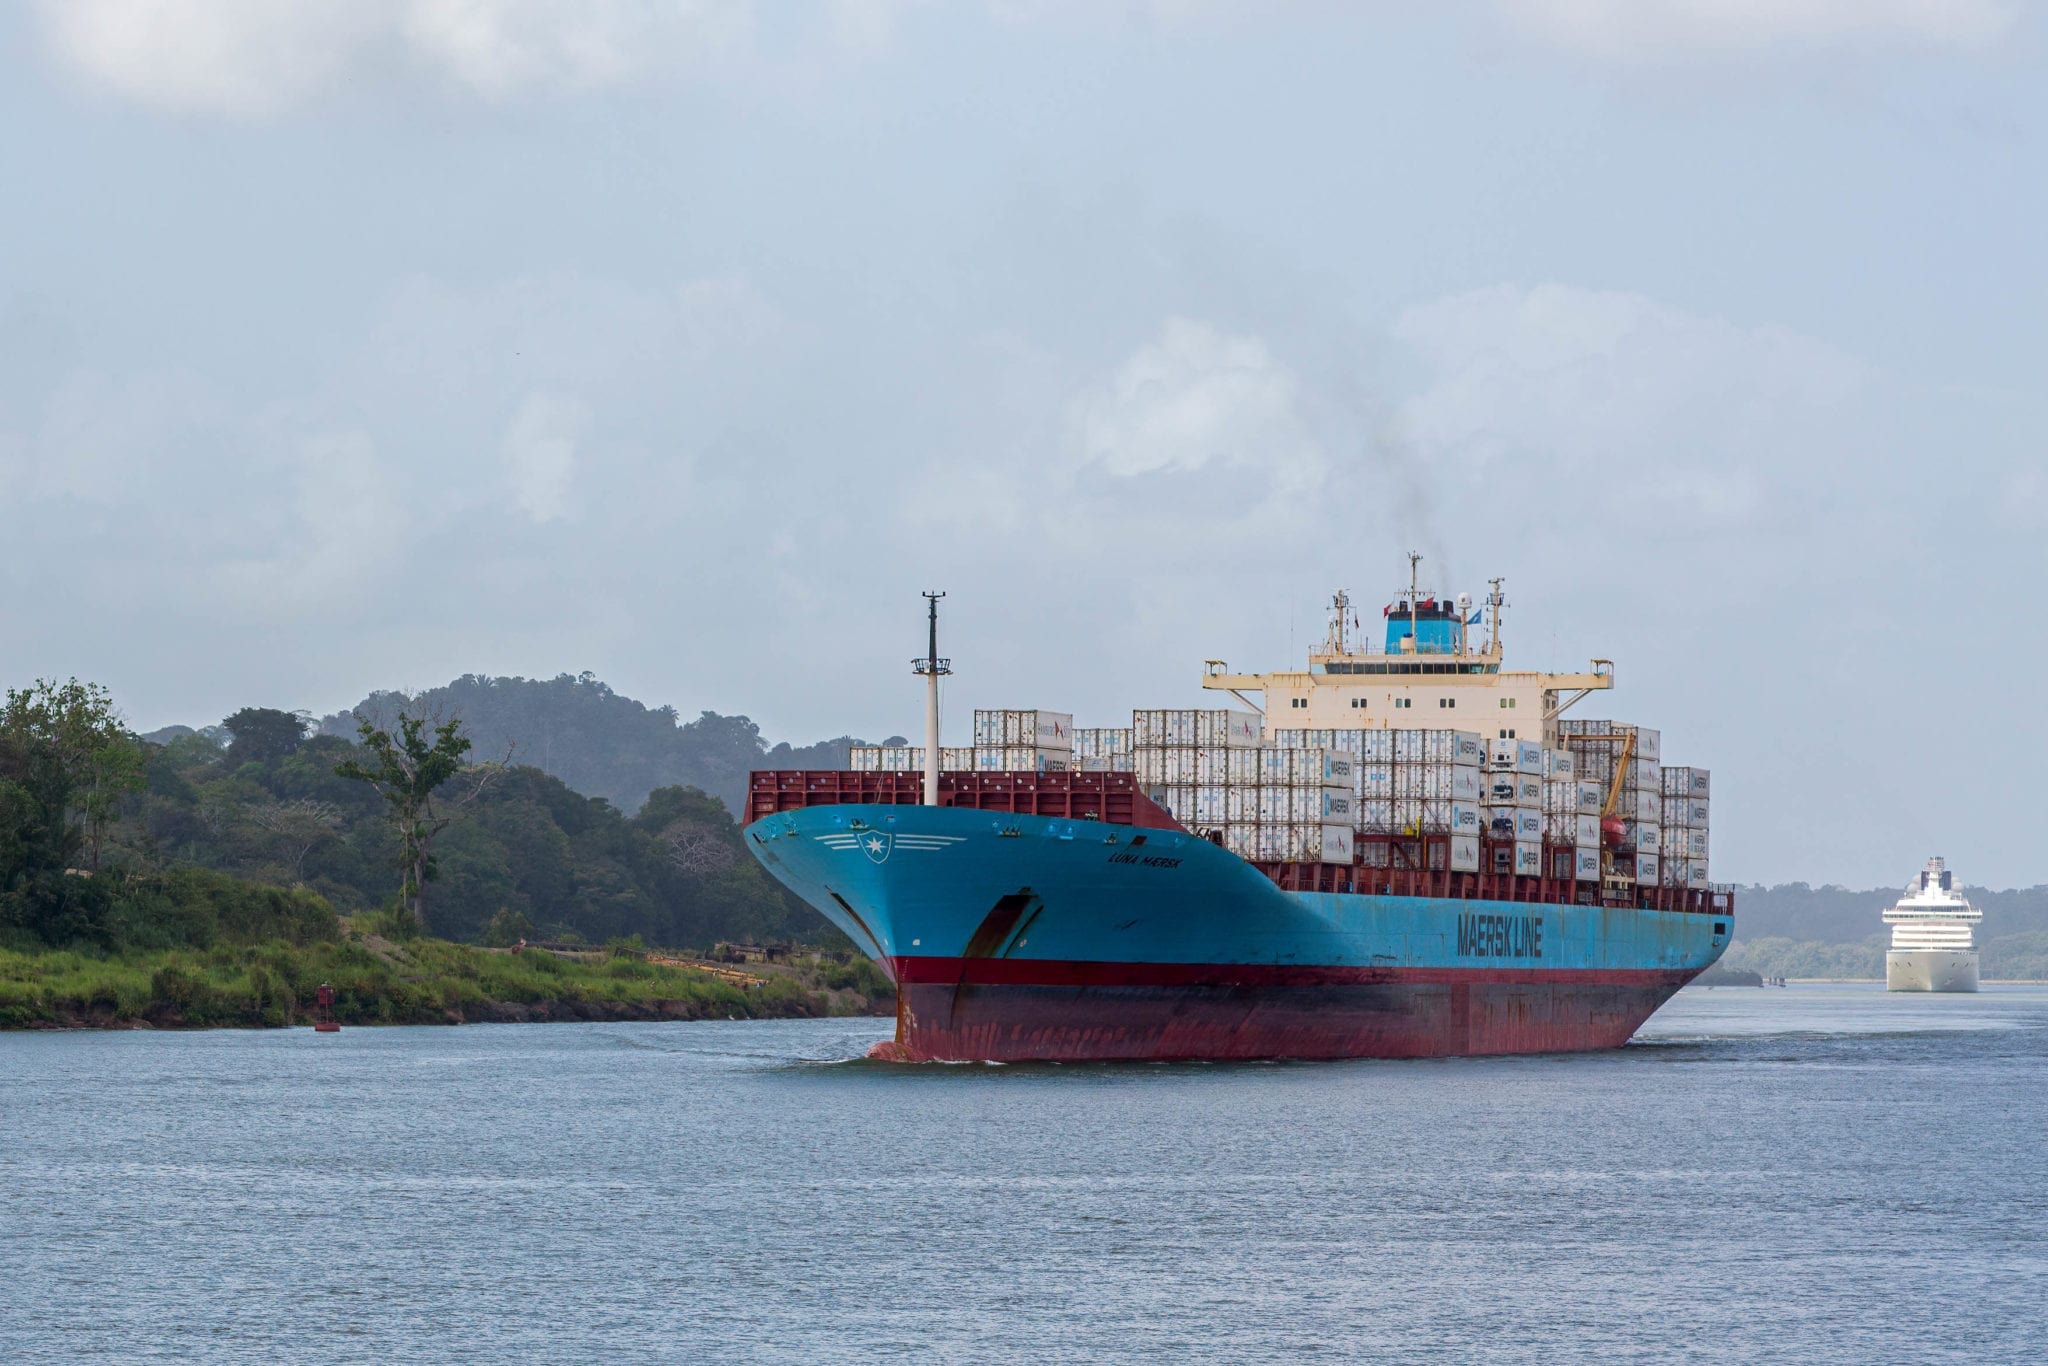 Canale di Panama: c’è da preoccuparsi dopo il caso Ever Given?